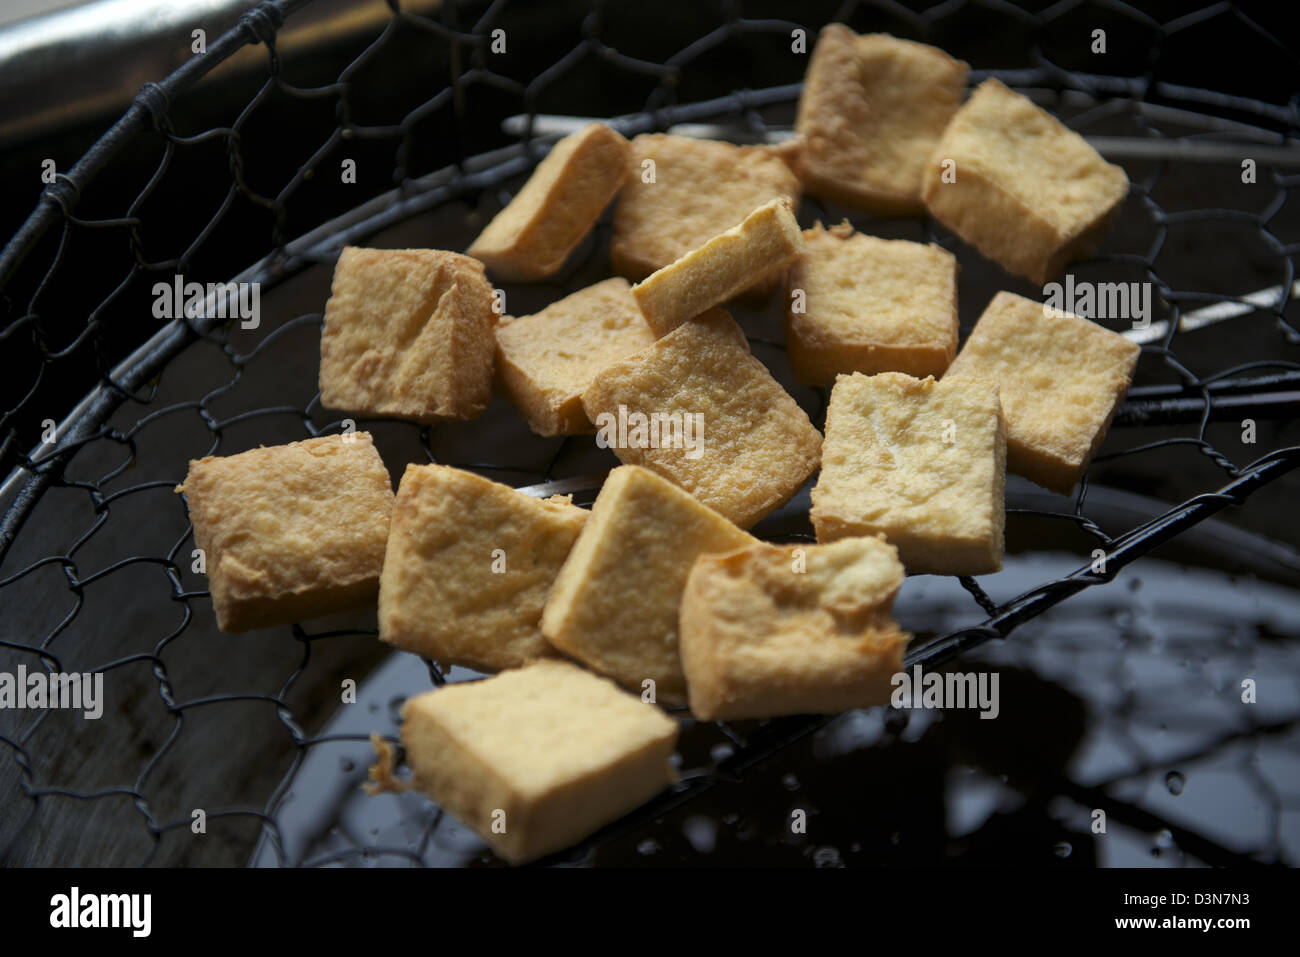 Fried strong-smelling fermented tofu in Yangzhou, Jiangsu province, China. 05-Feb-2013 Stock Photo